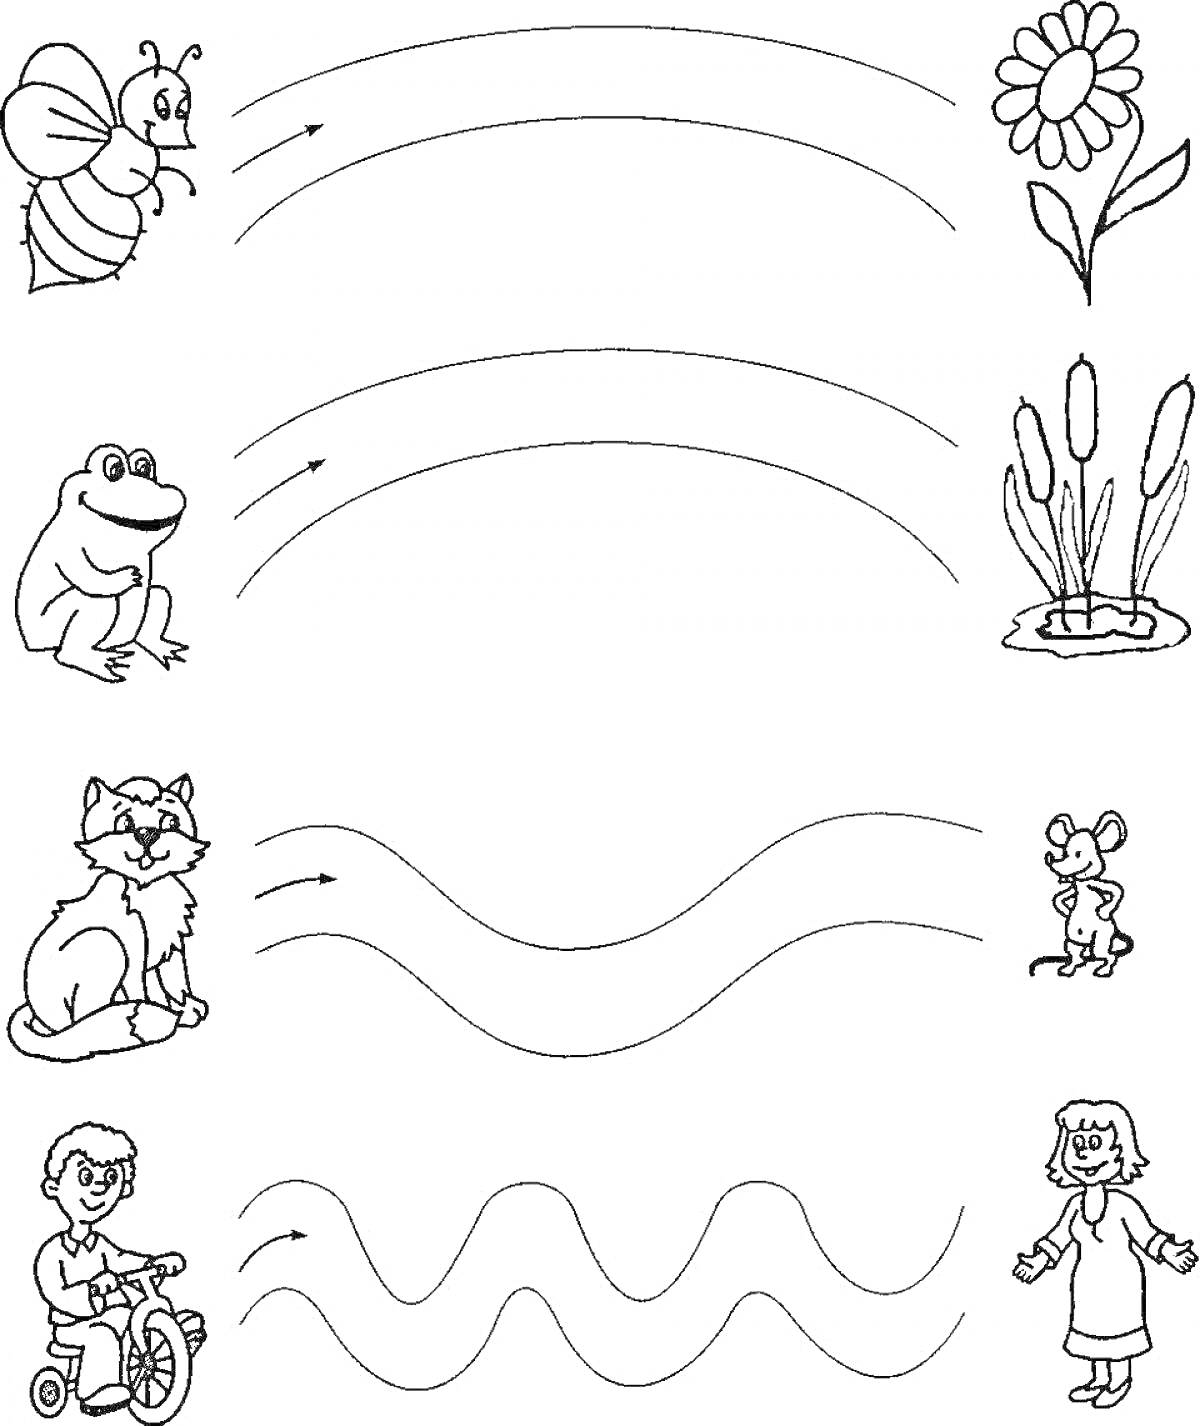 На раскраске изображено: Растения, Кот, Мышь, Ребёнок, Велосипед, Человек, Линии, Волны, Цветы, Дороги, Лягушки, Пчёлы